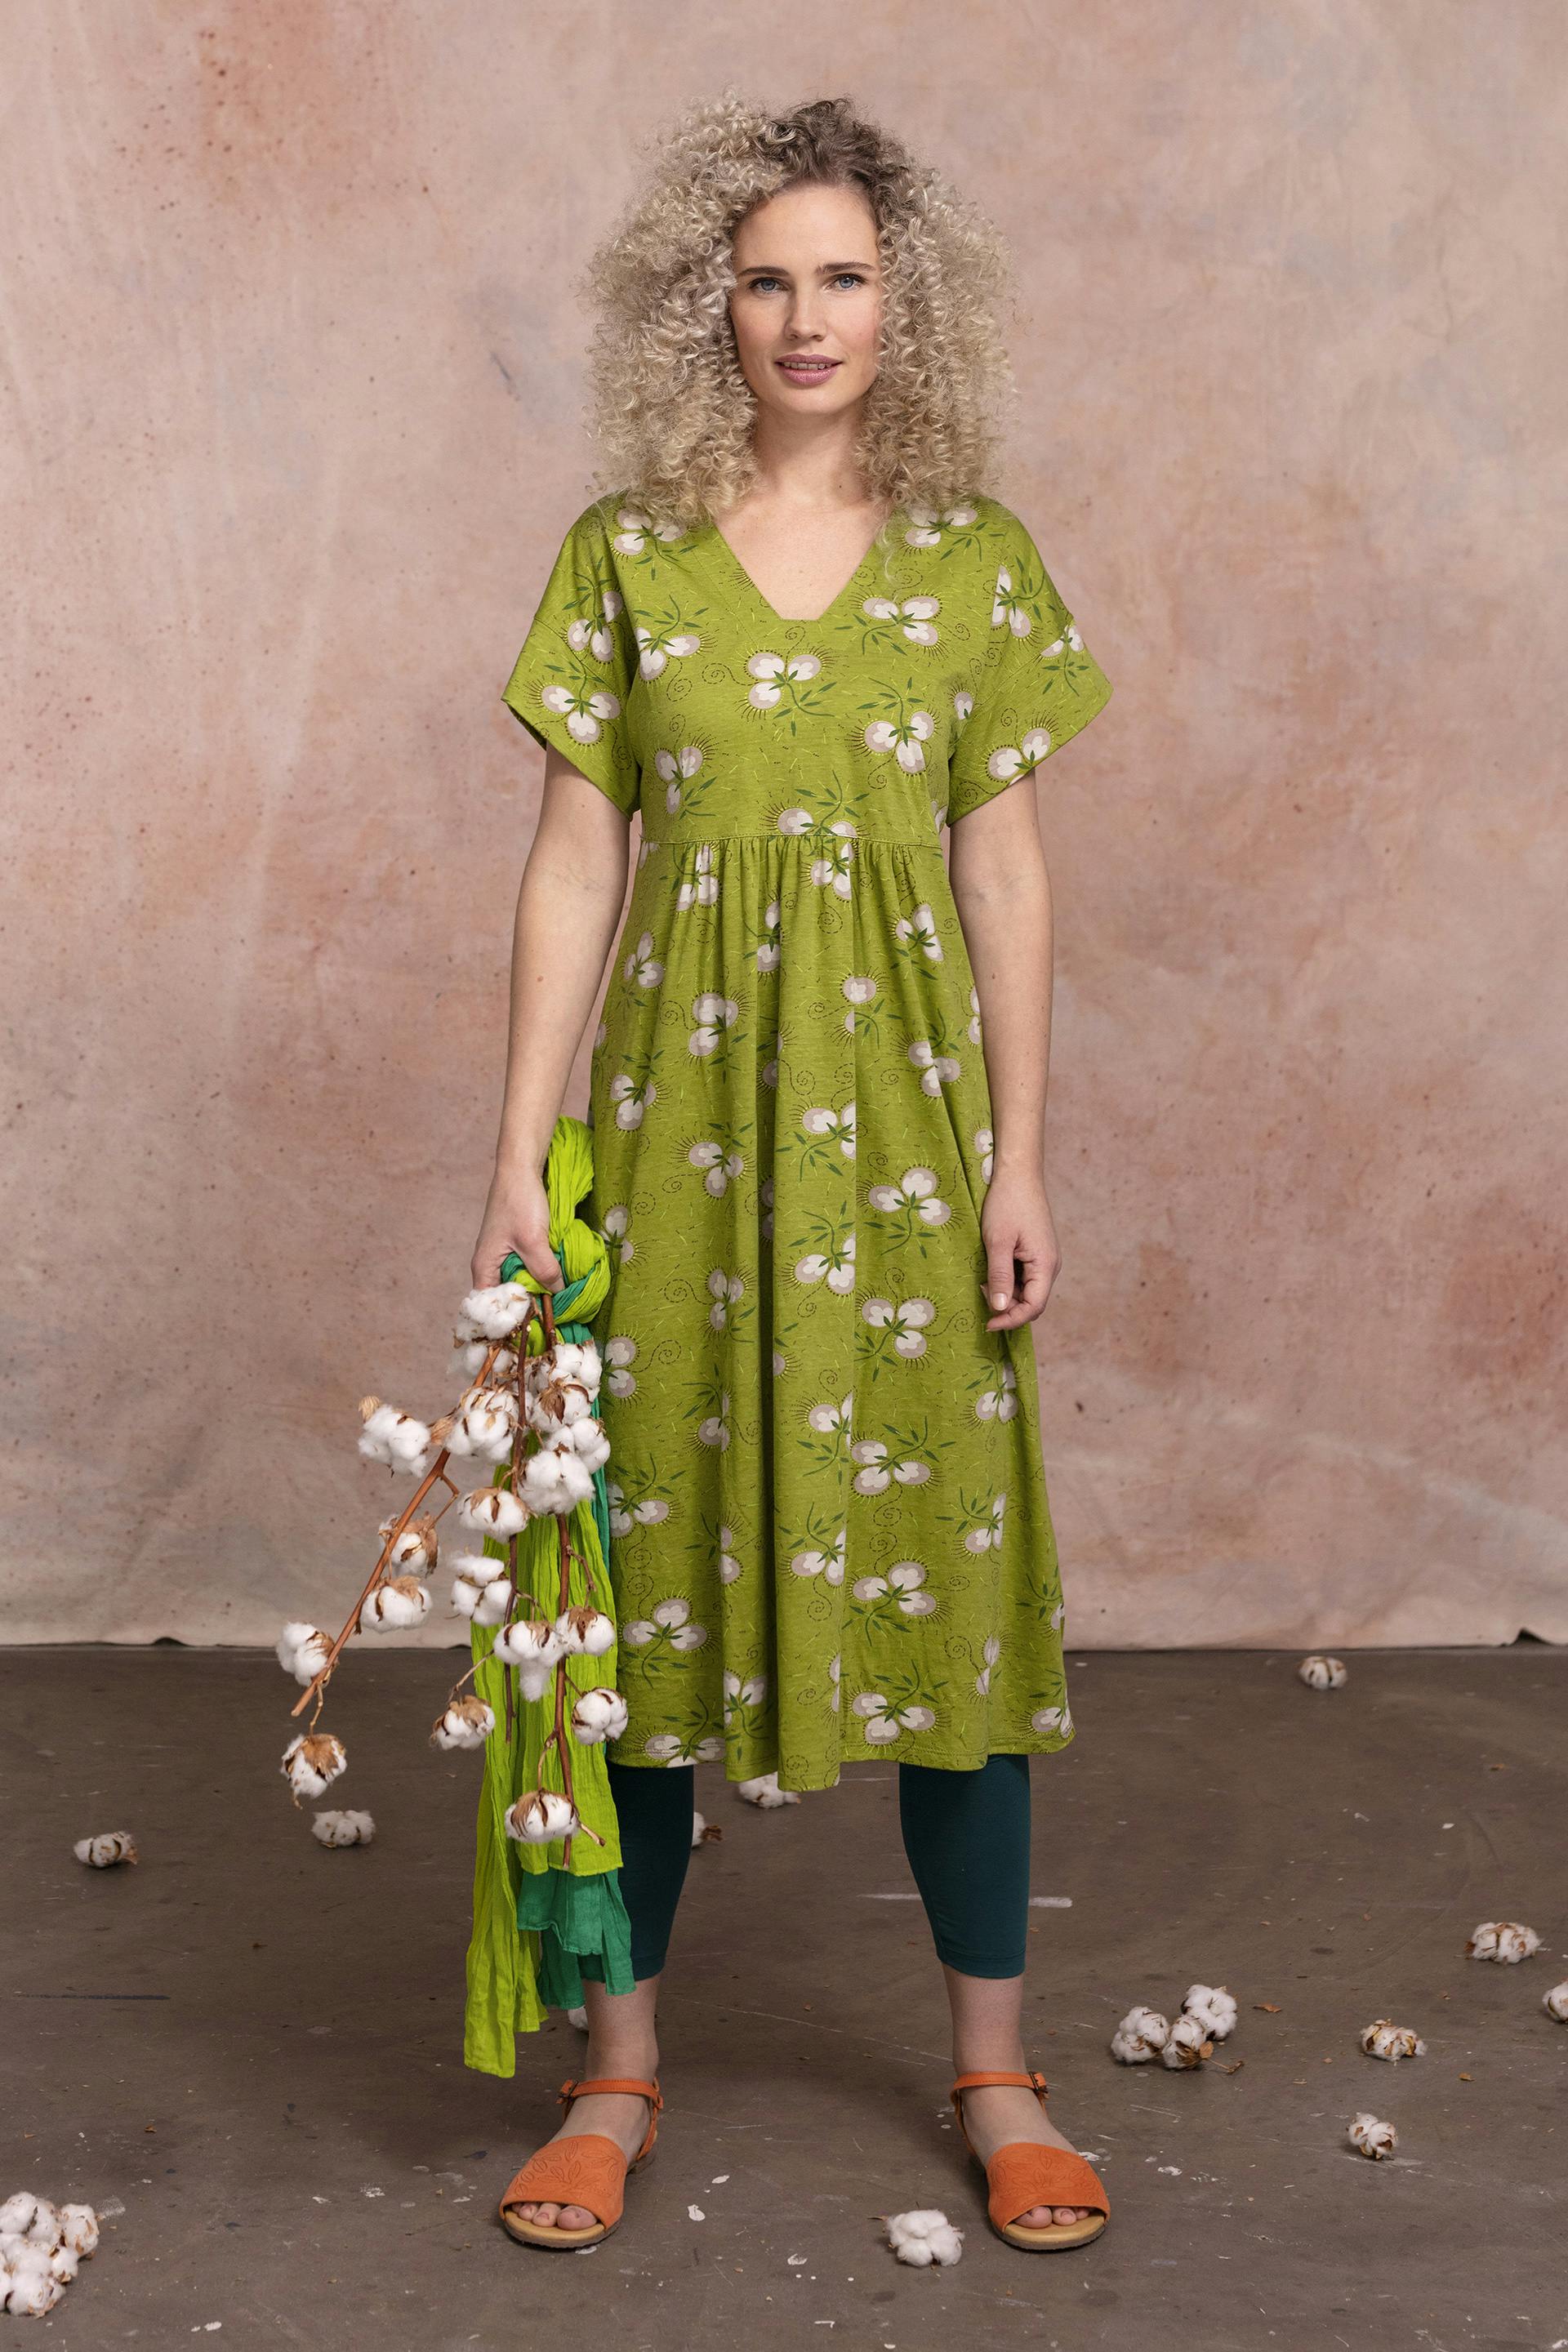 Gudrun Sjödén model in a green dress